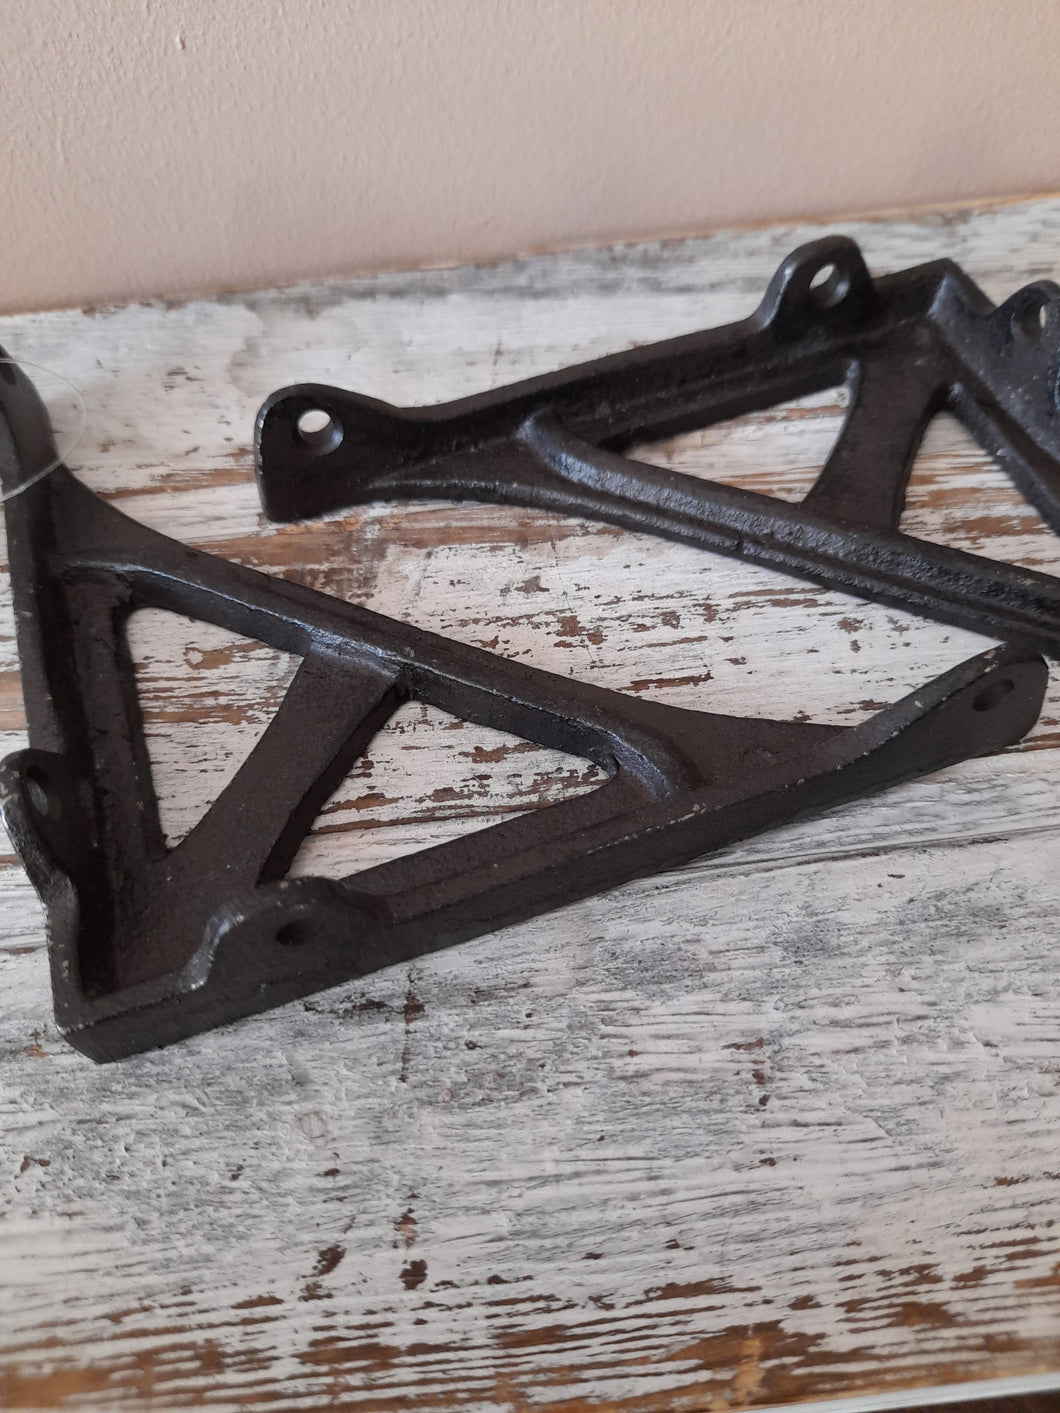 cast iron shelf brackets